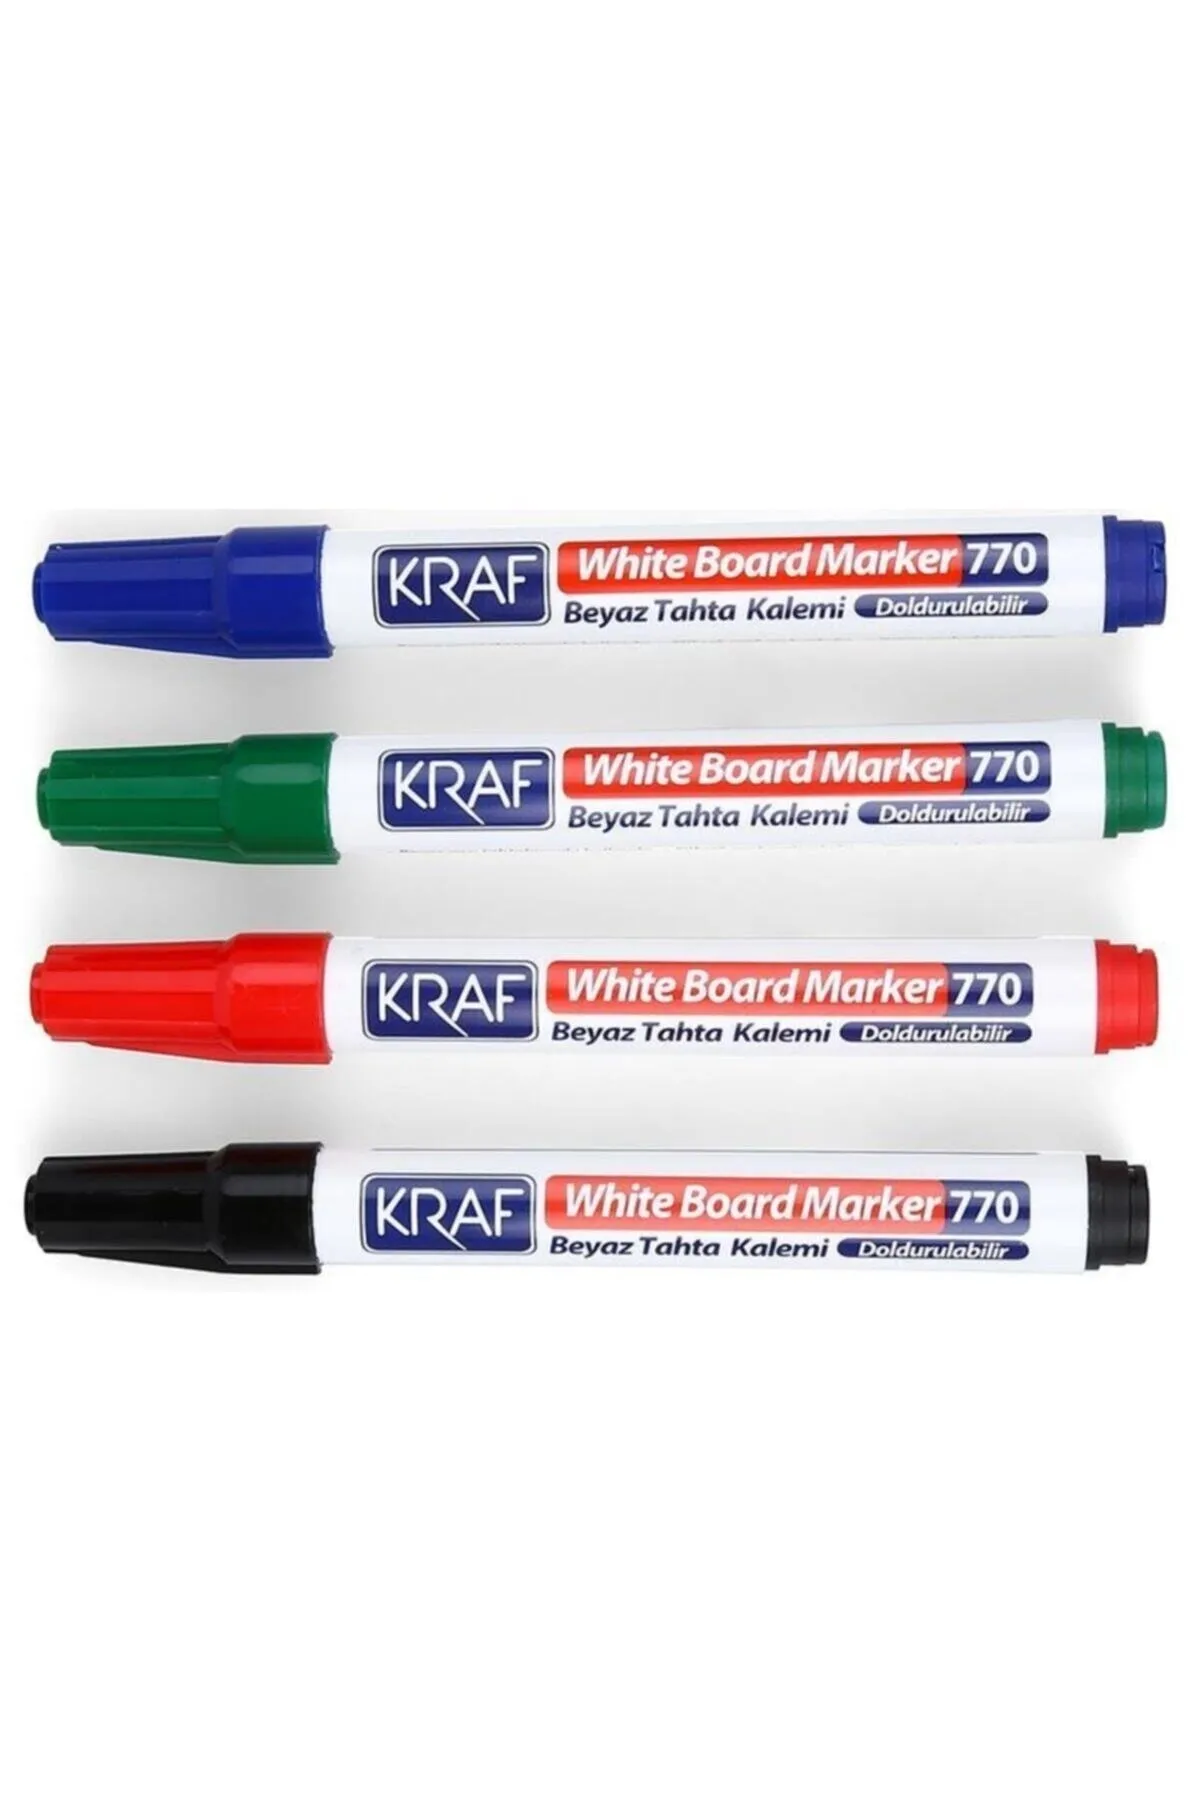 KRAF Beyaz Tahta Kalemi Doldurulabilir 770-4 4lü